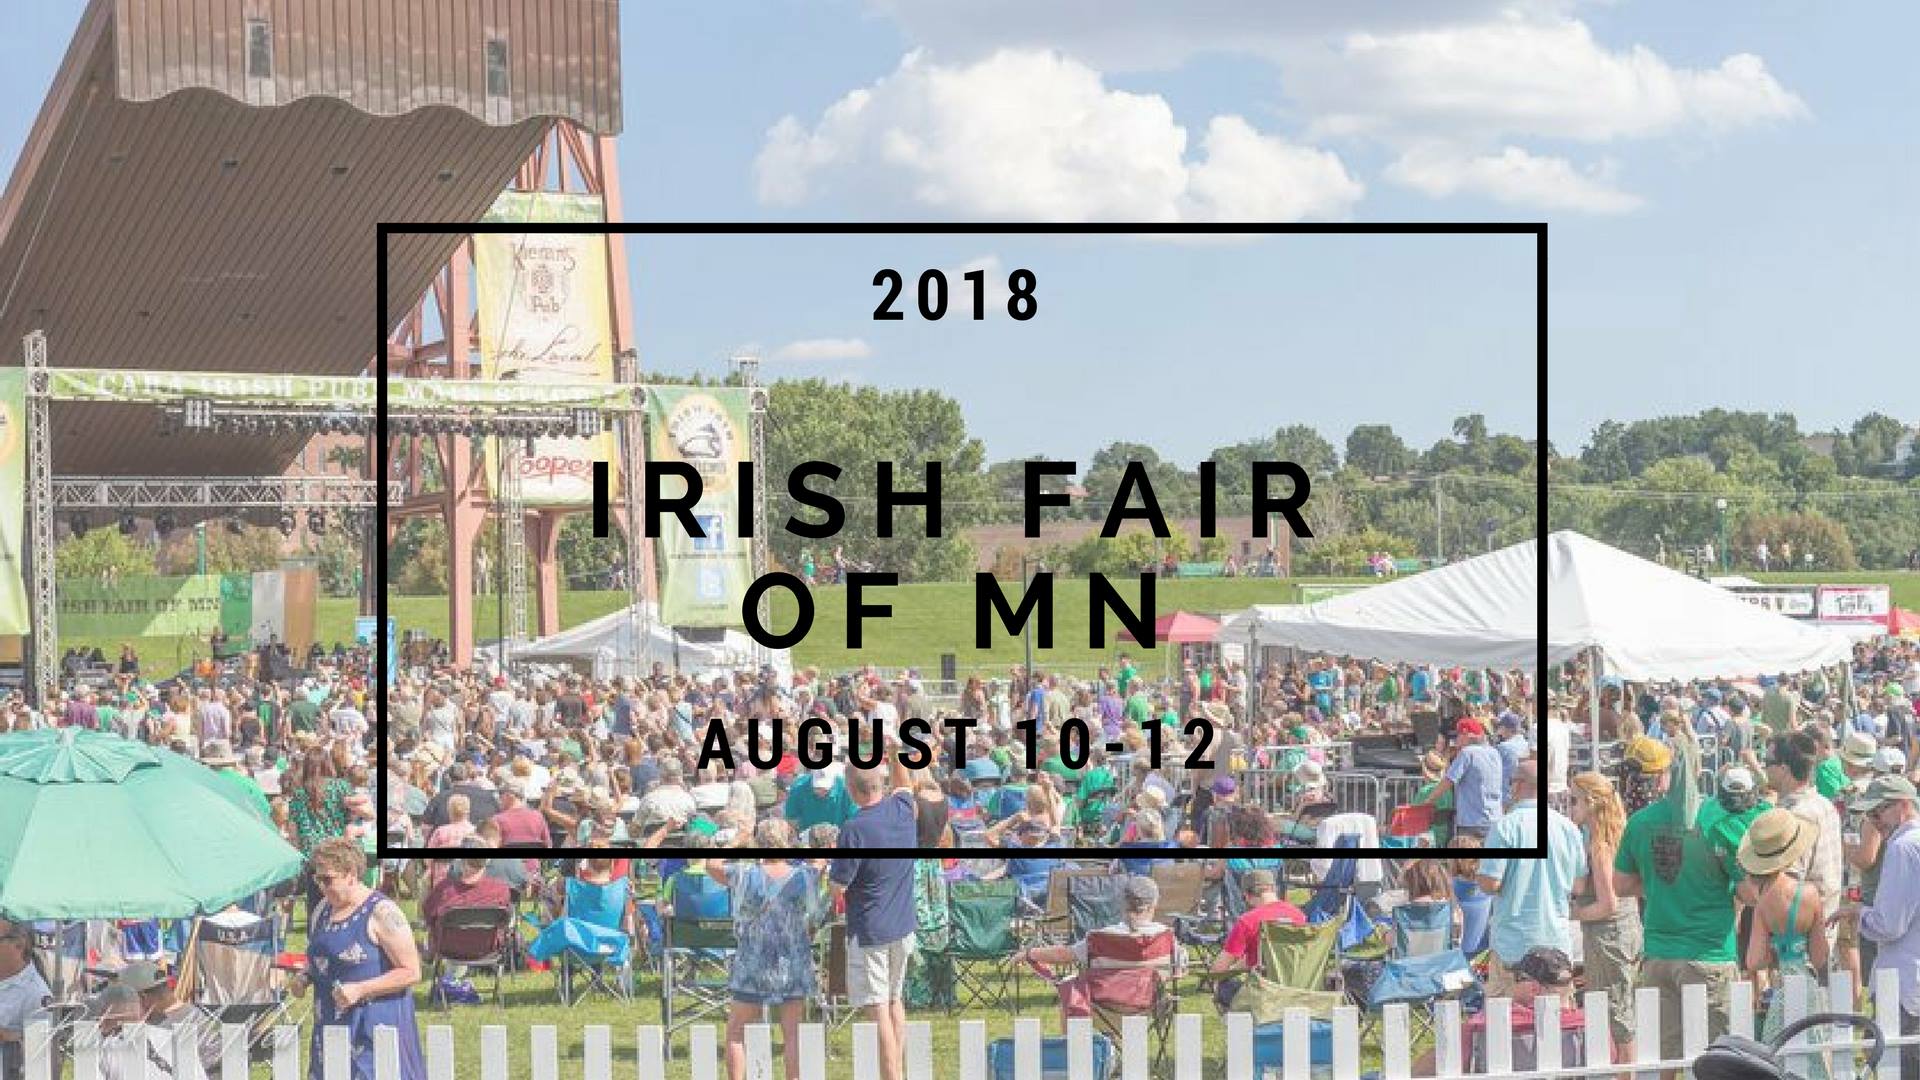 Irish Fair of Minnesota 2018 WEQY 104.7 FM